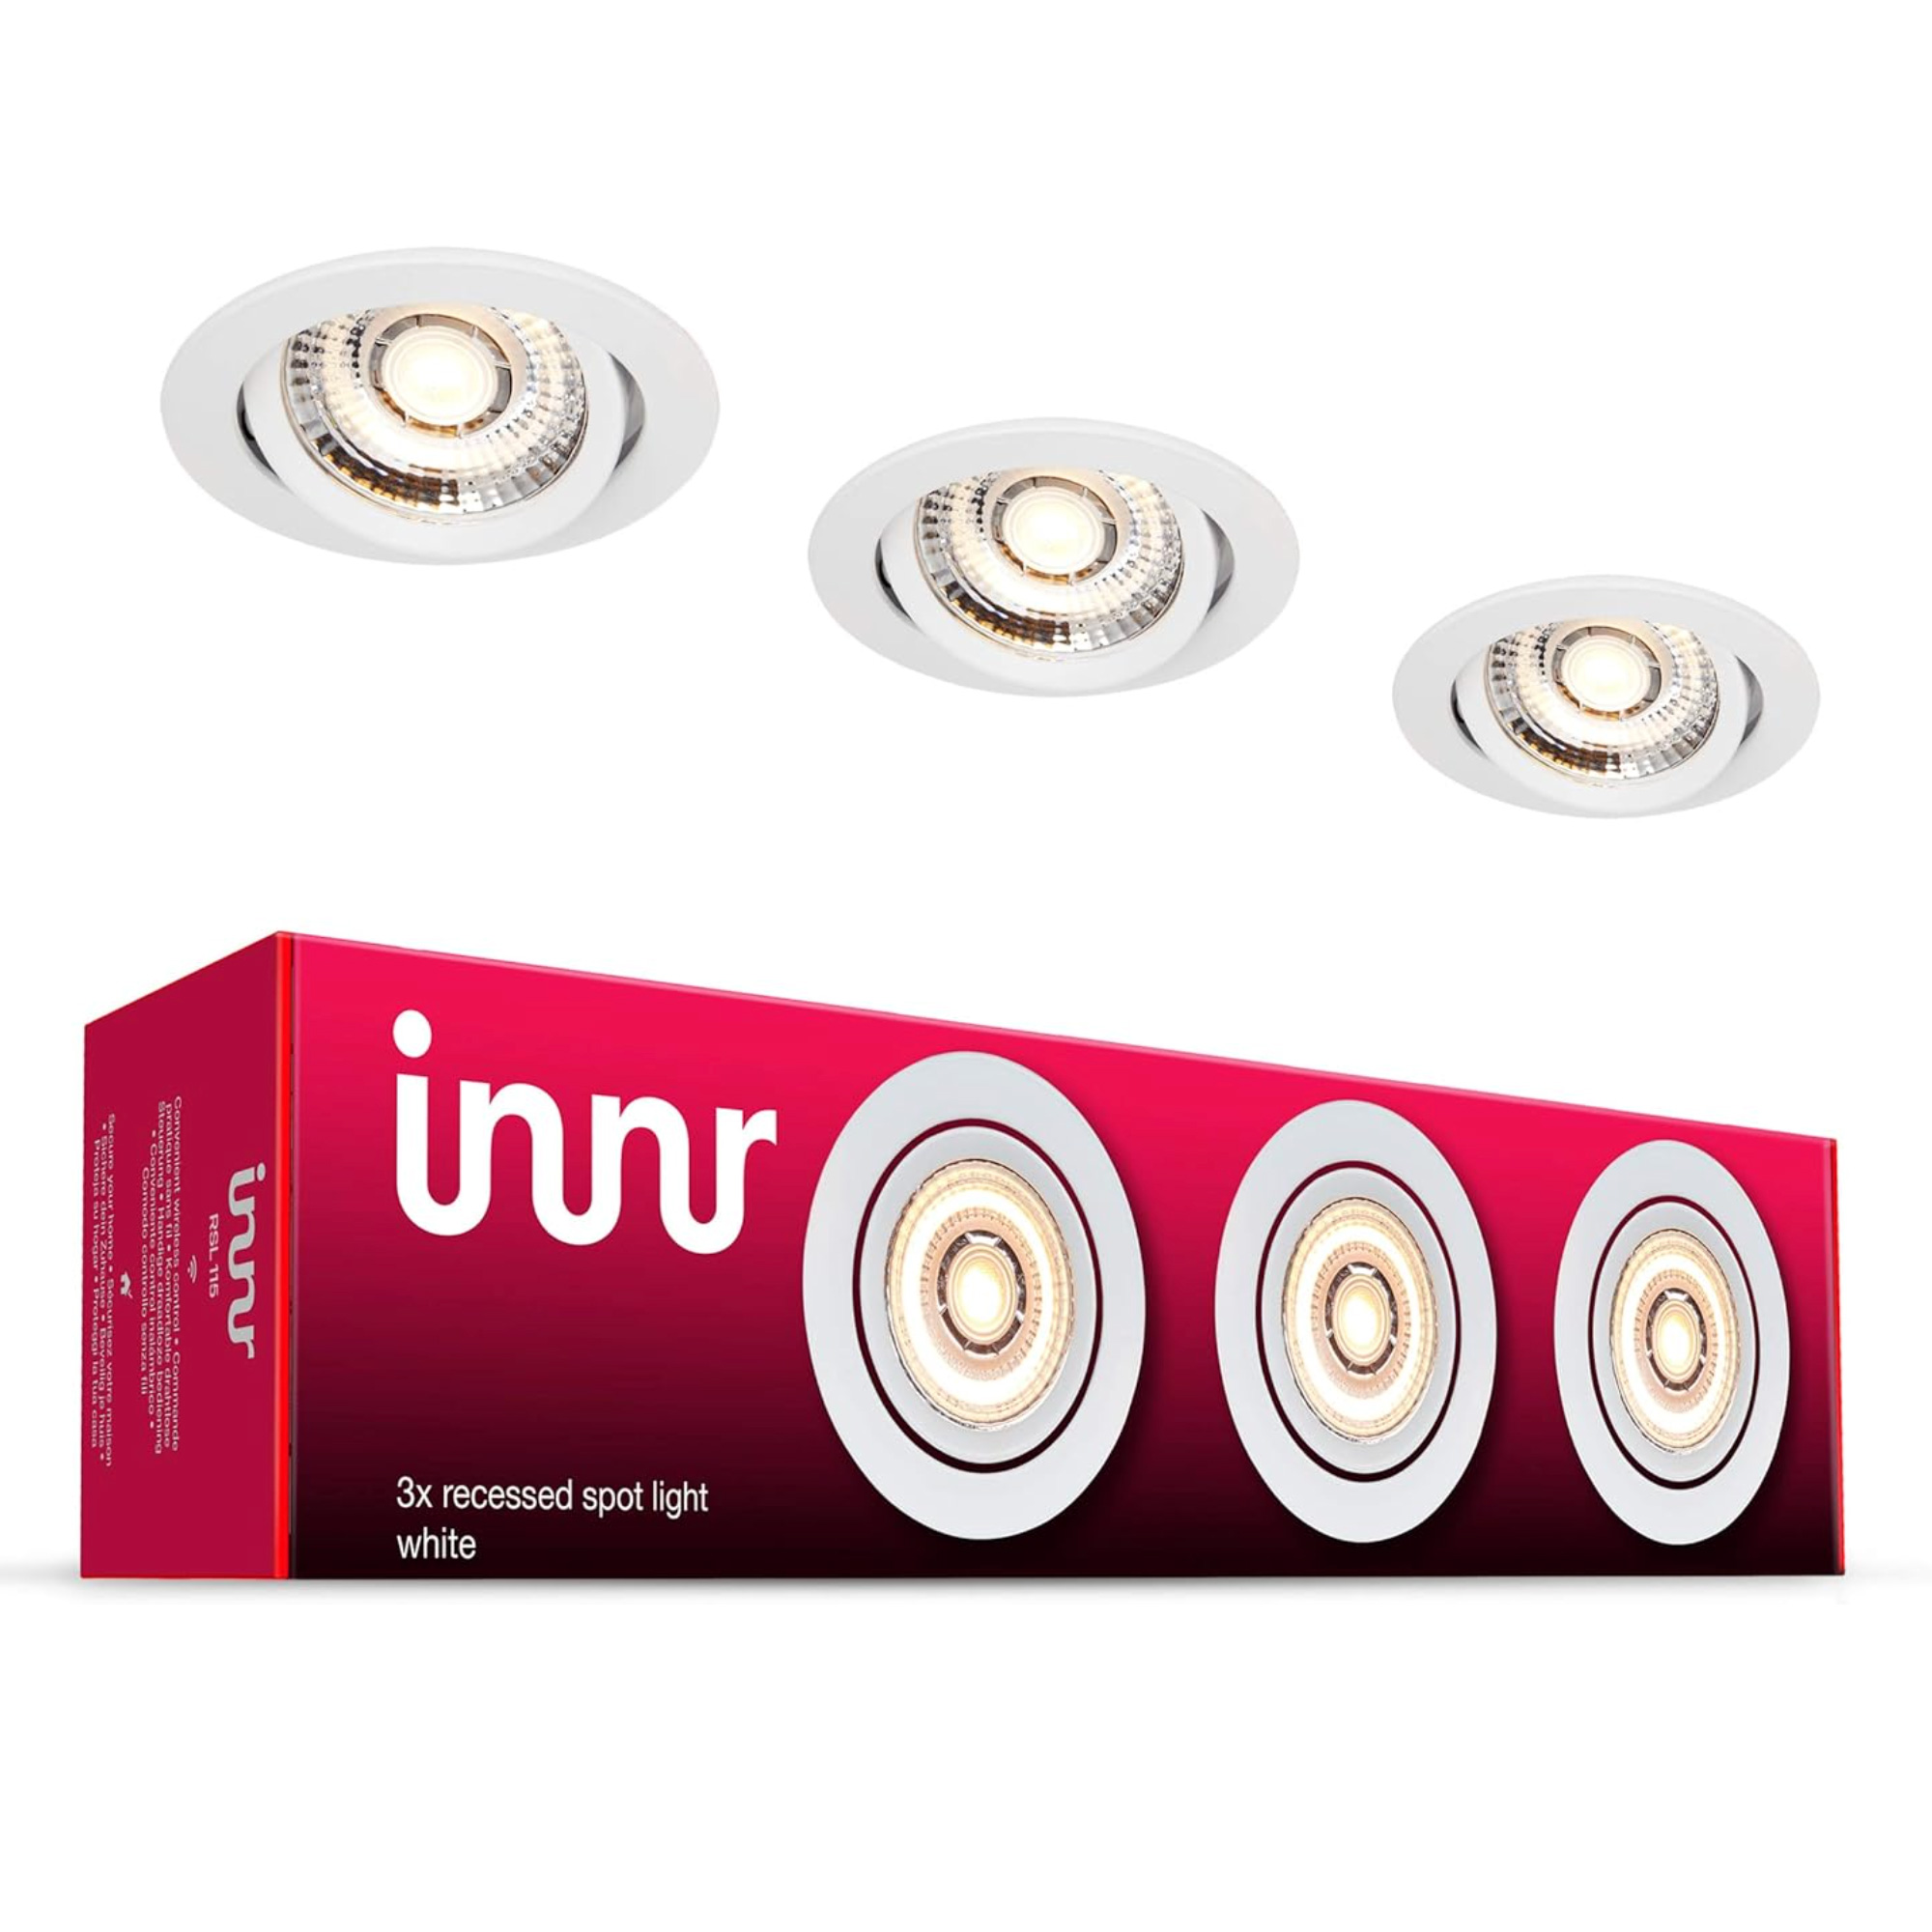 Innr smart lighting recessed ceiling spotlights